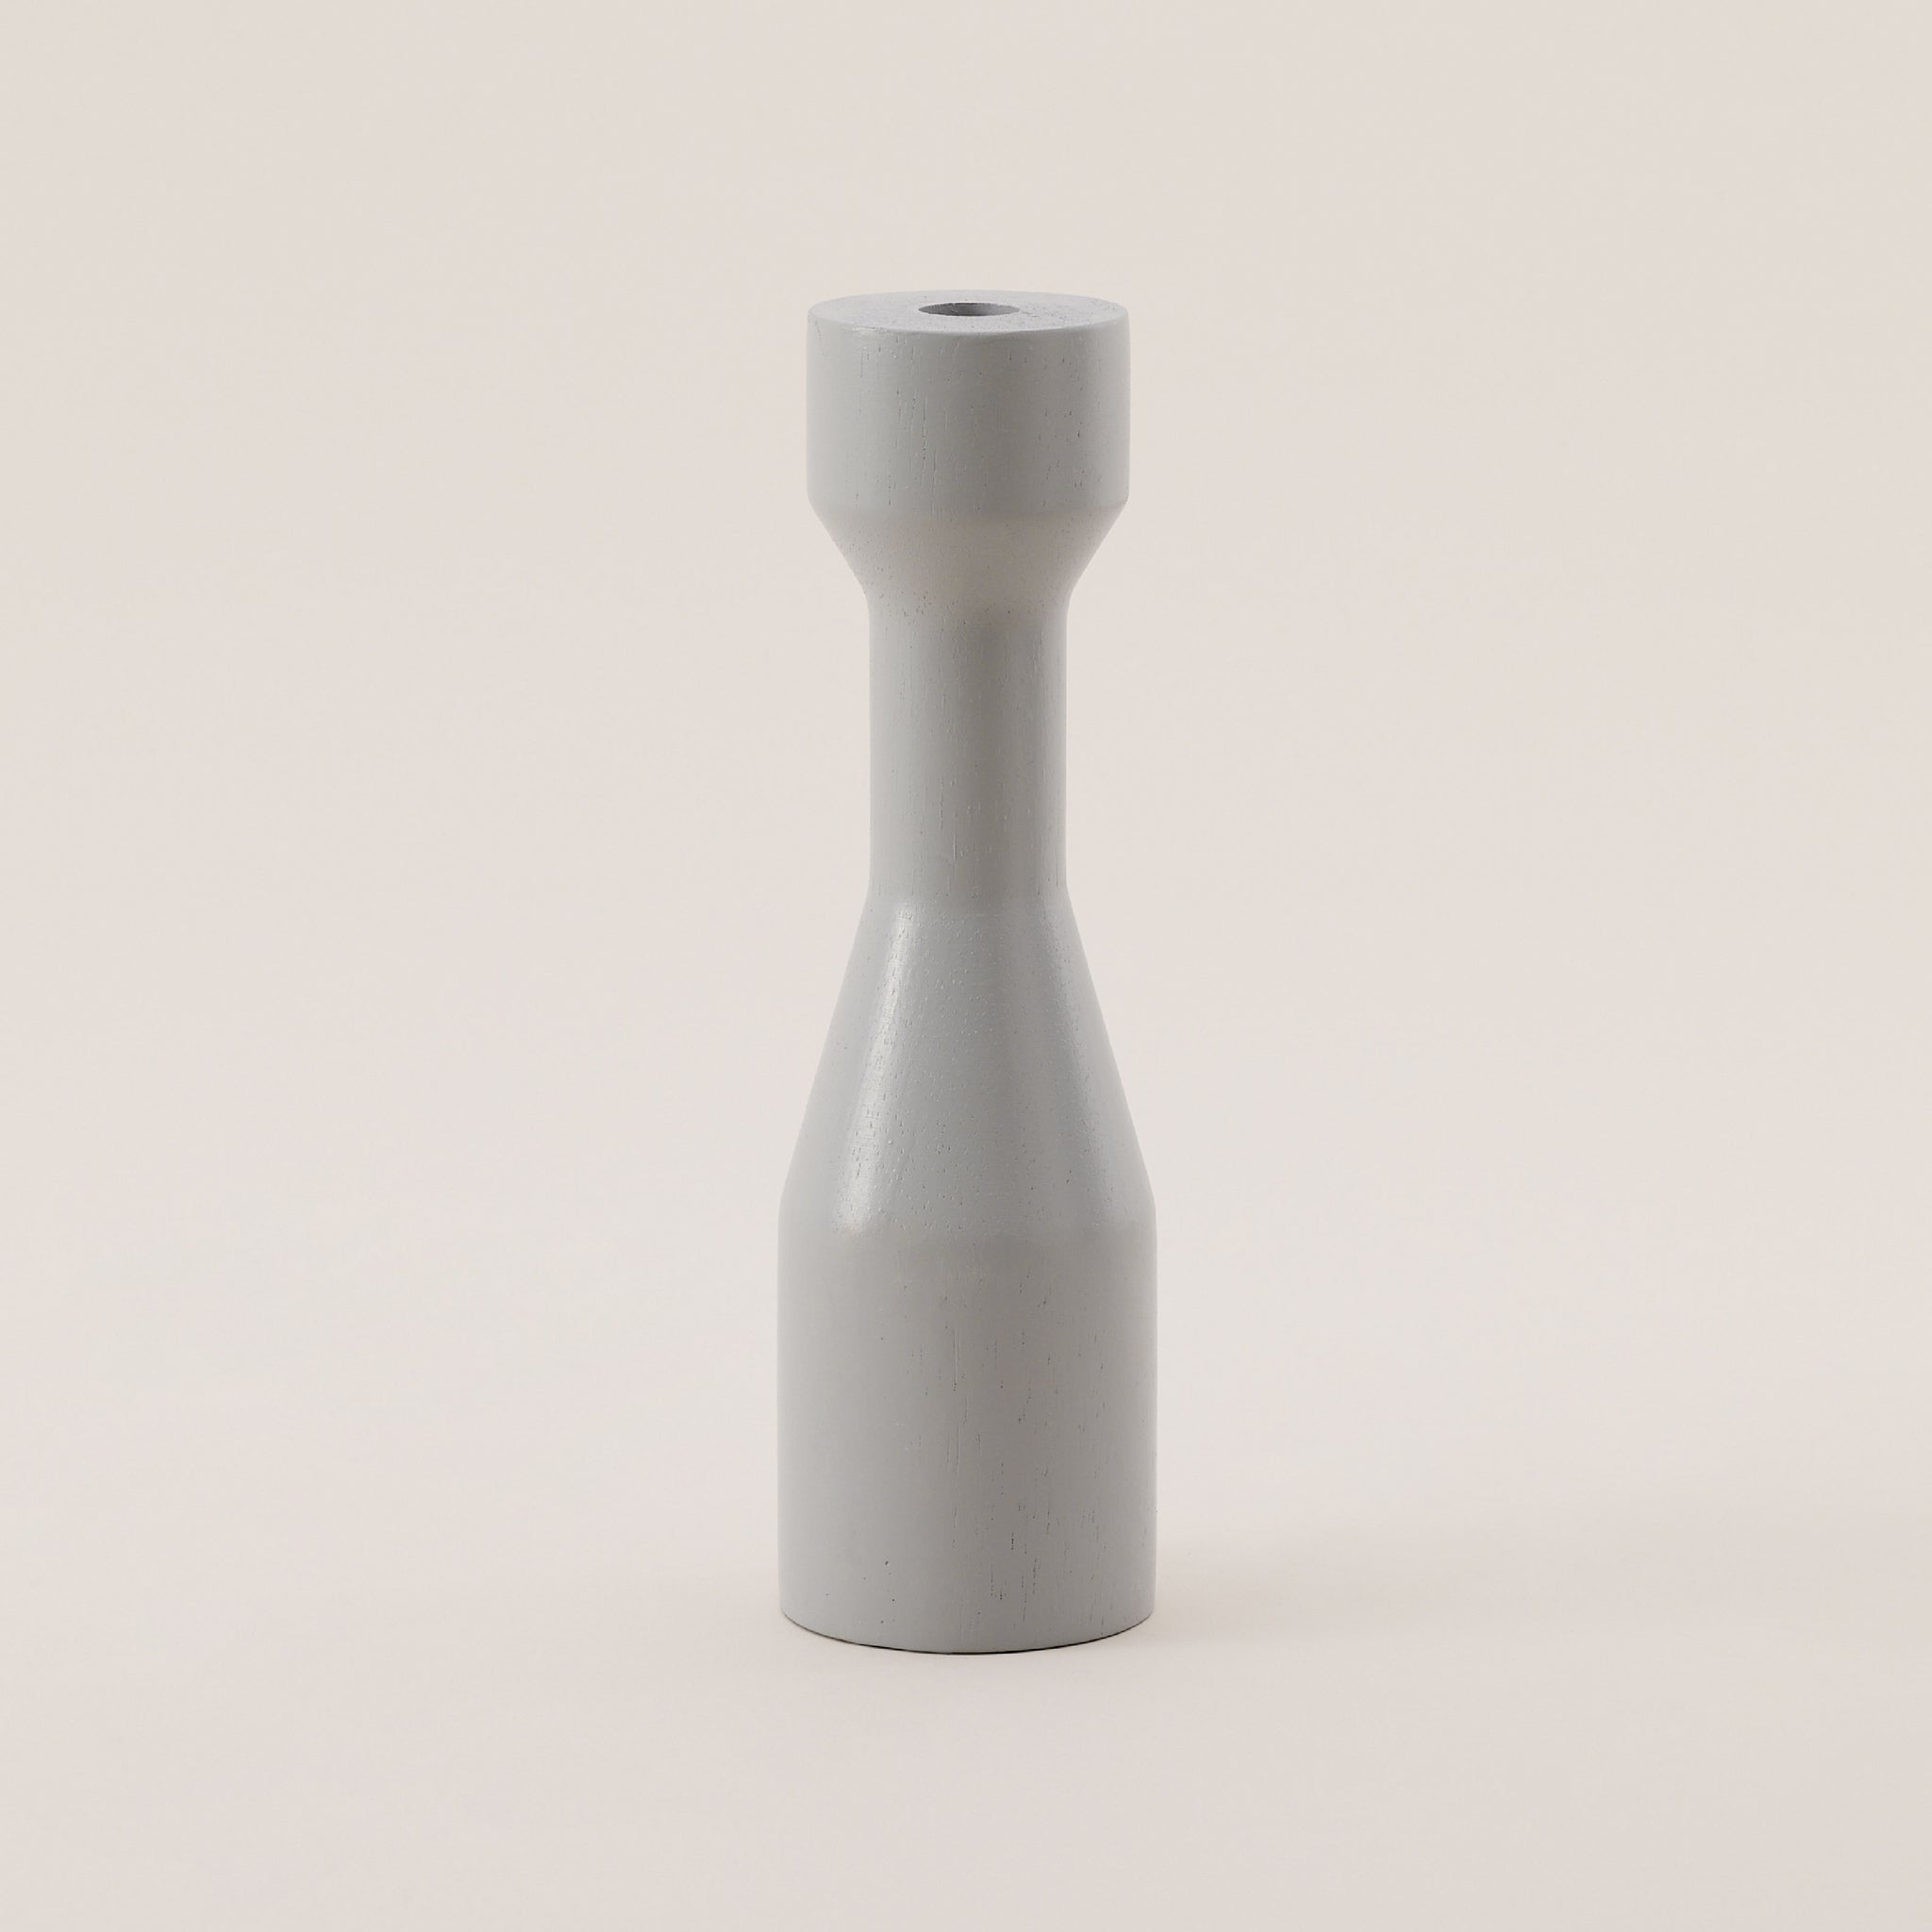 Light Grey Wooden Candle Holder Set | ชุดเชิงเทียน